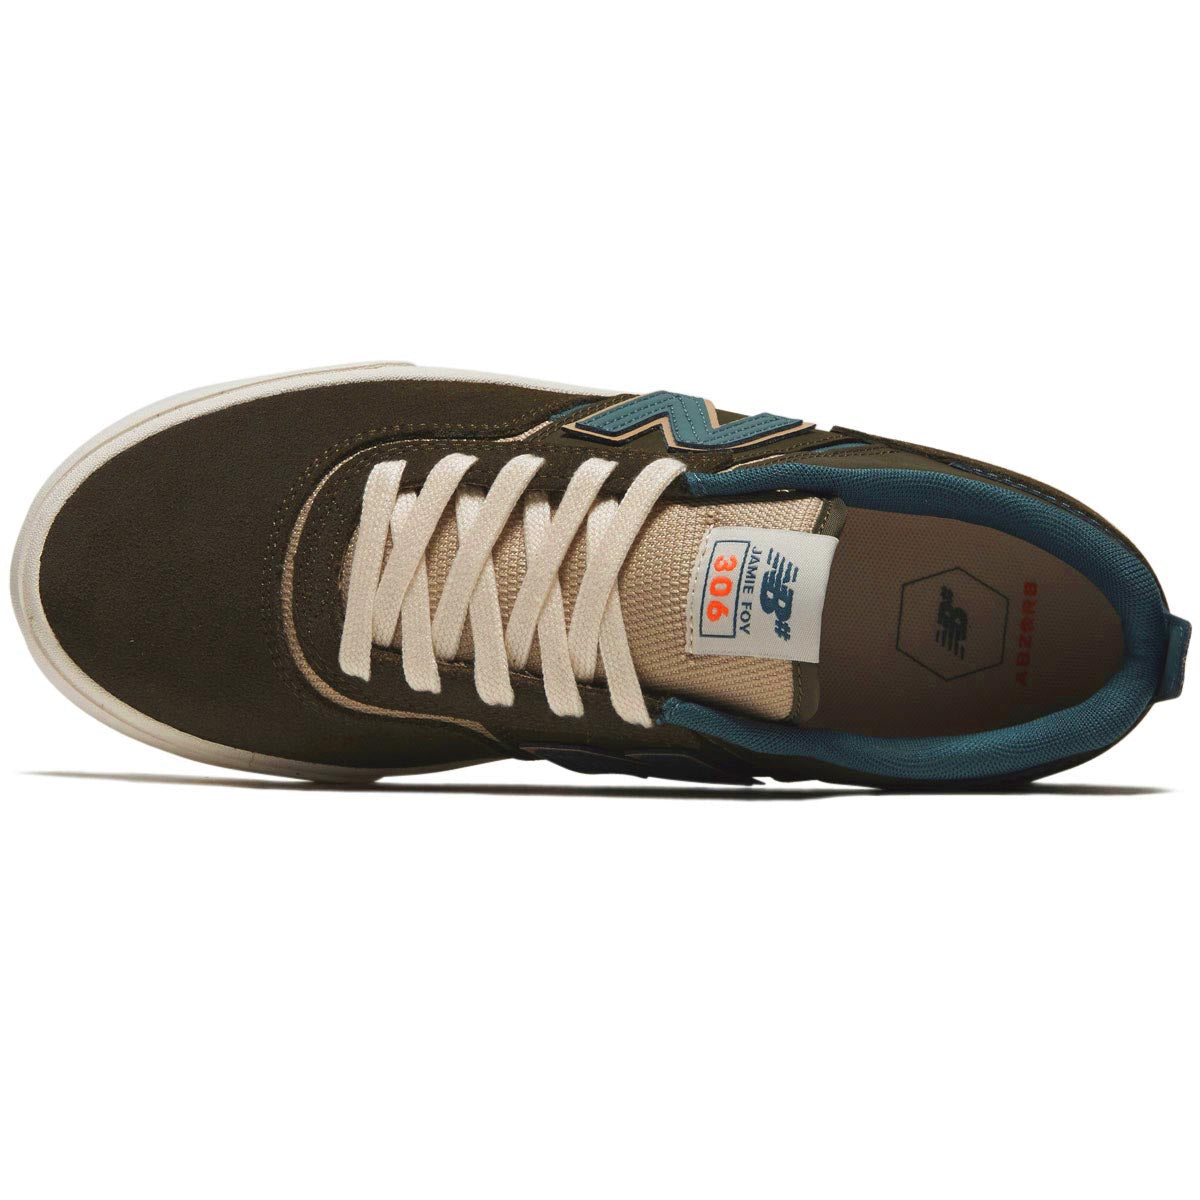 New Balance 306 Foy Shoes - Dark Olive/Spruce image 3